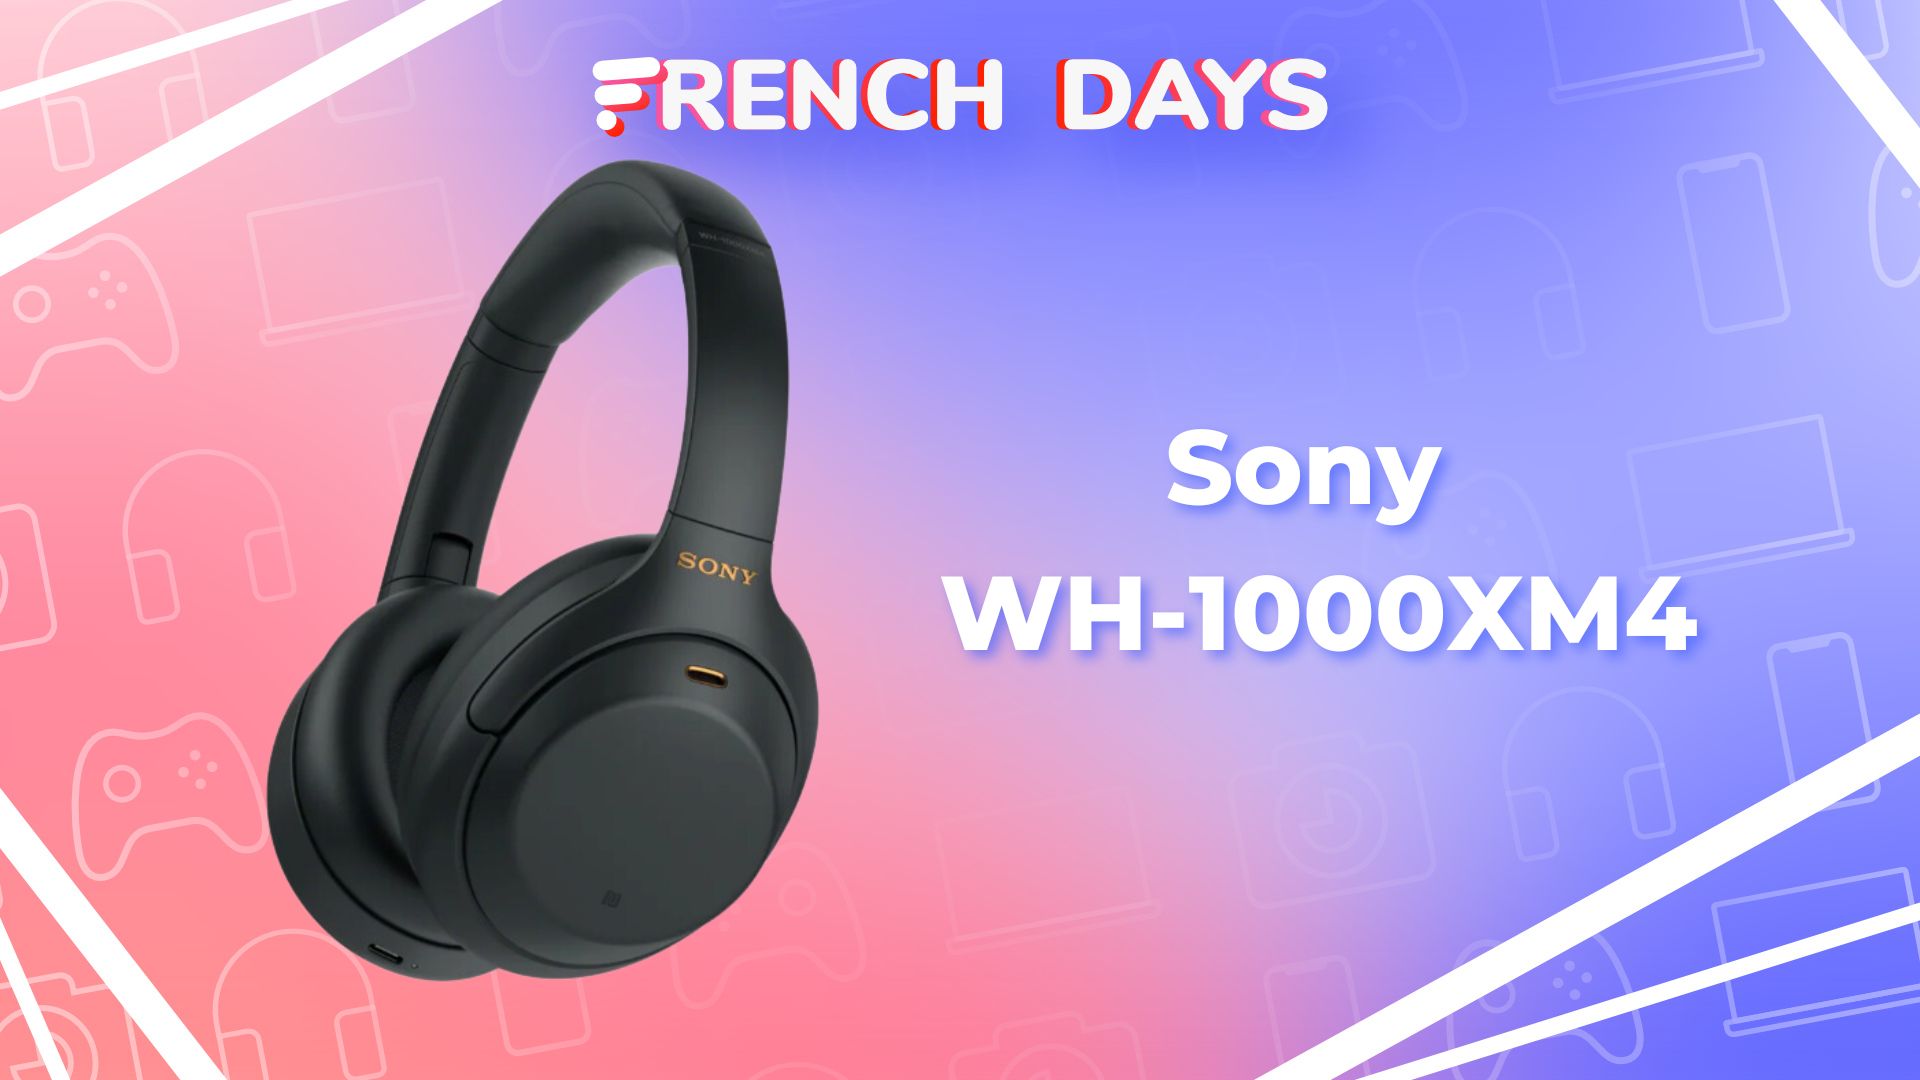 Le casque Sony WH1000XM4 passe sous la barre des 200€ chez